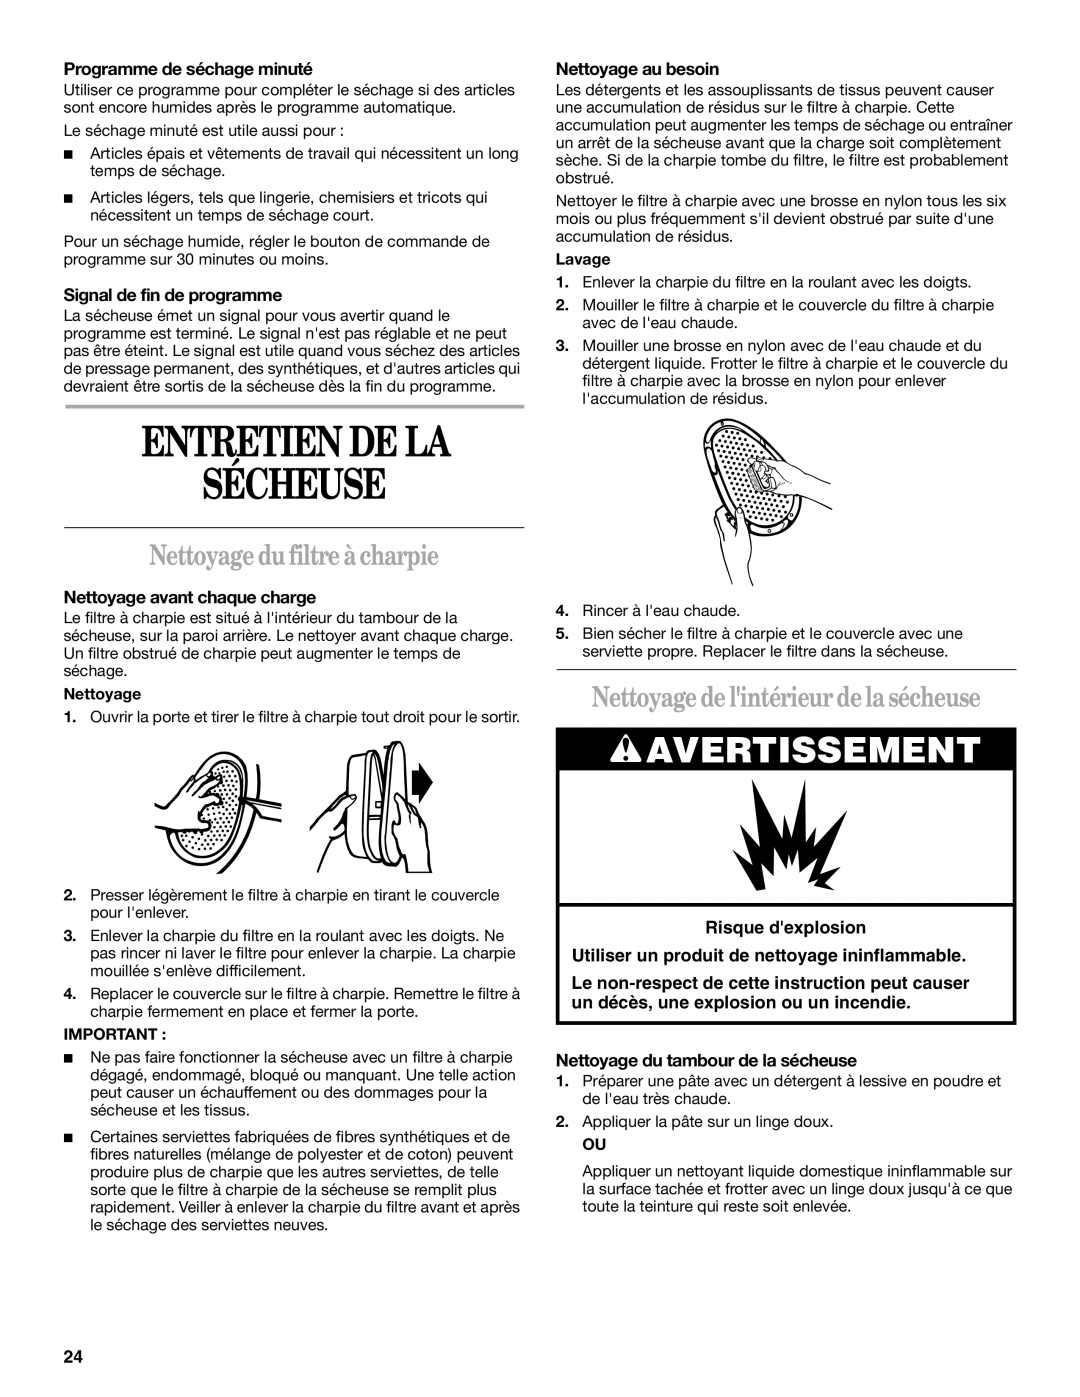 Whirlpool 3406879 manual Entretien De La Sécheuse, Nettoyage du filtre à charpie, Nettoyage de lintérieur de la sécheuse 